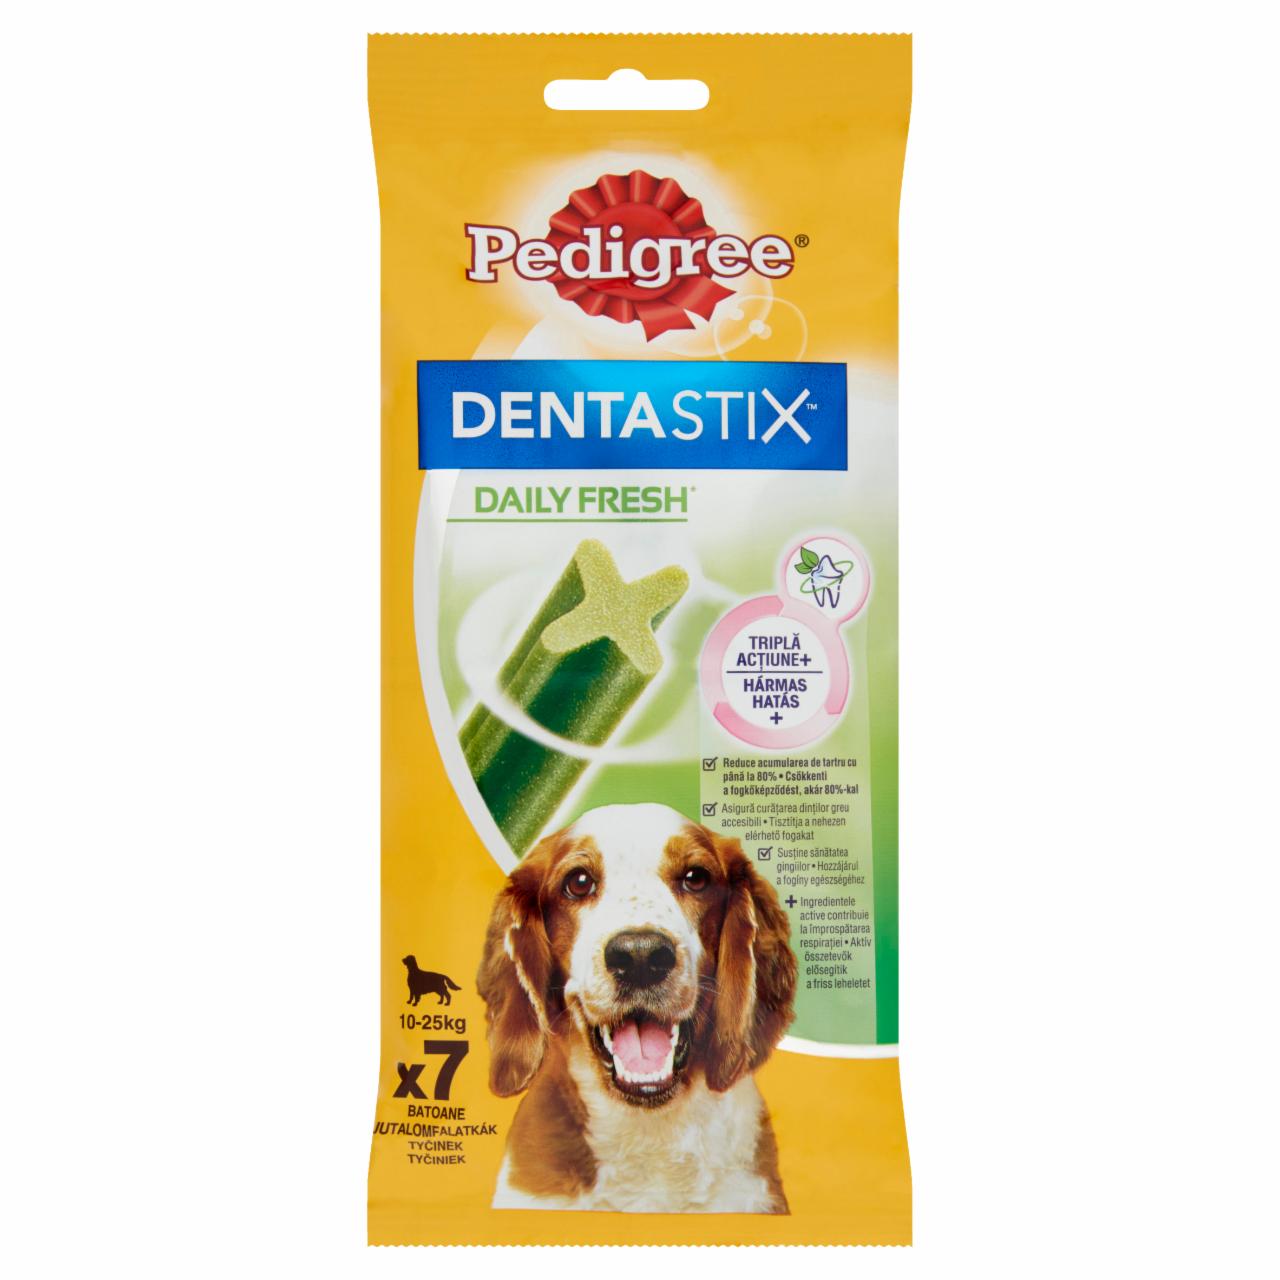 Képek - Pedigree DentaStix Daily Fresh jutalomfalat kutyák számára 180 g